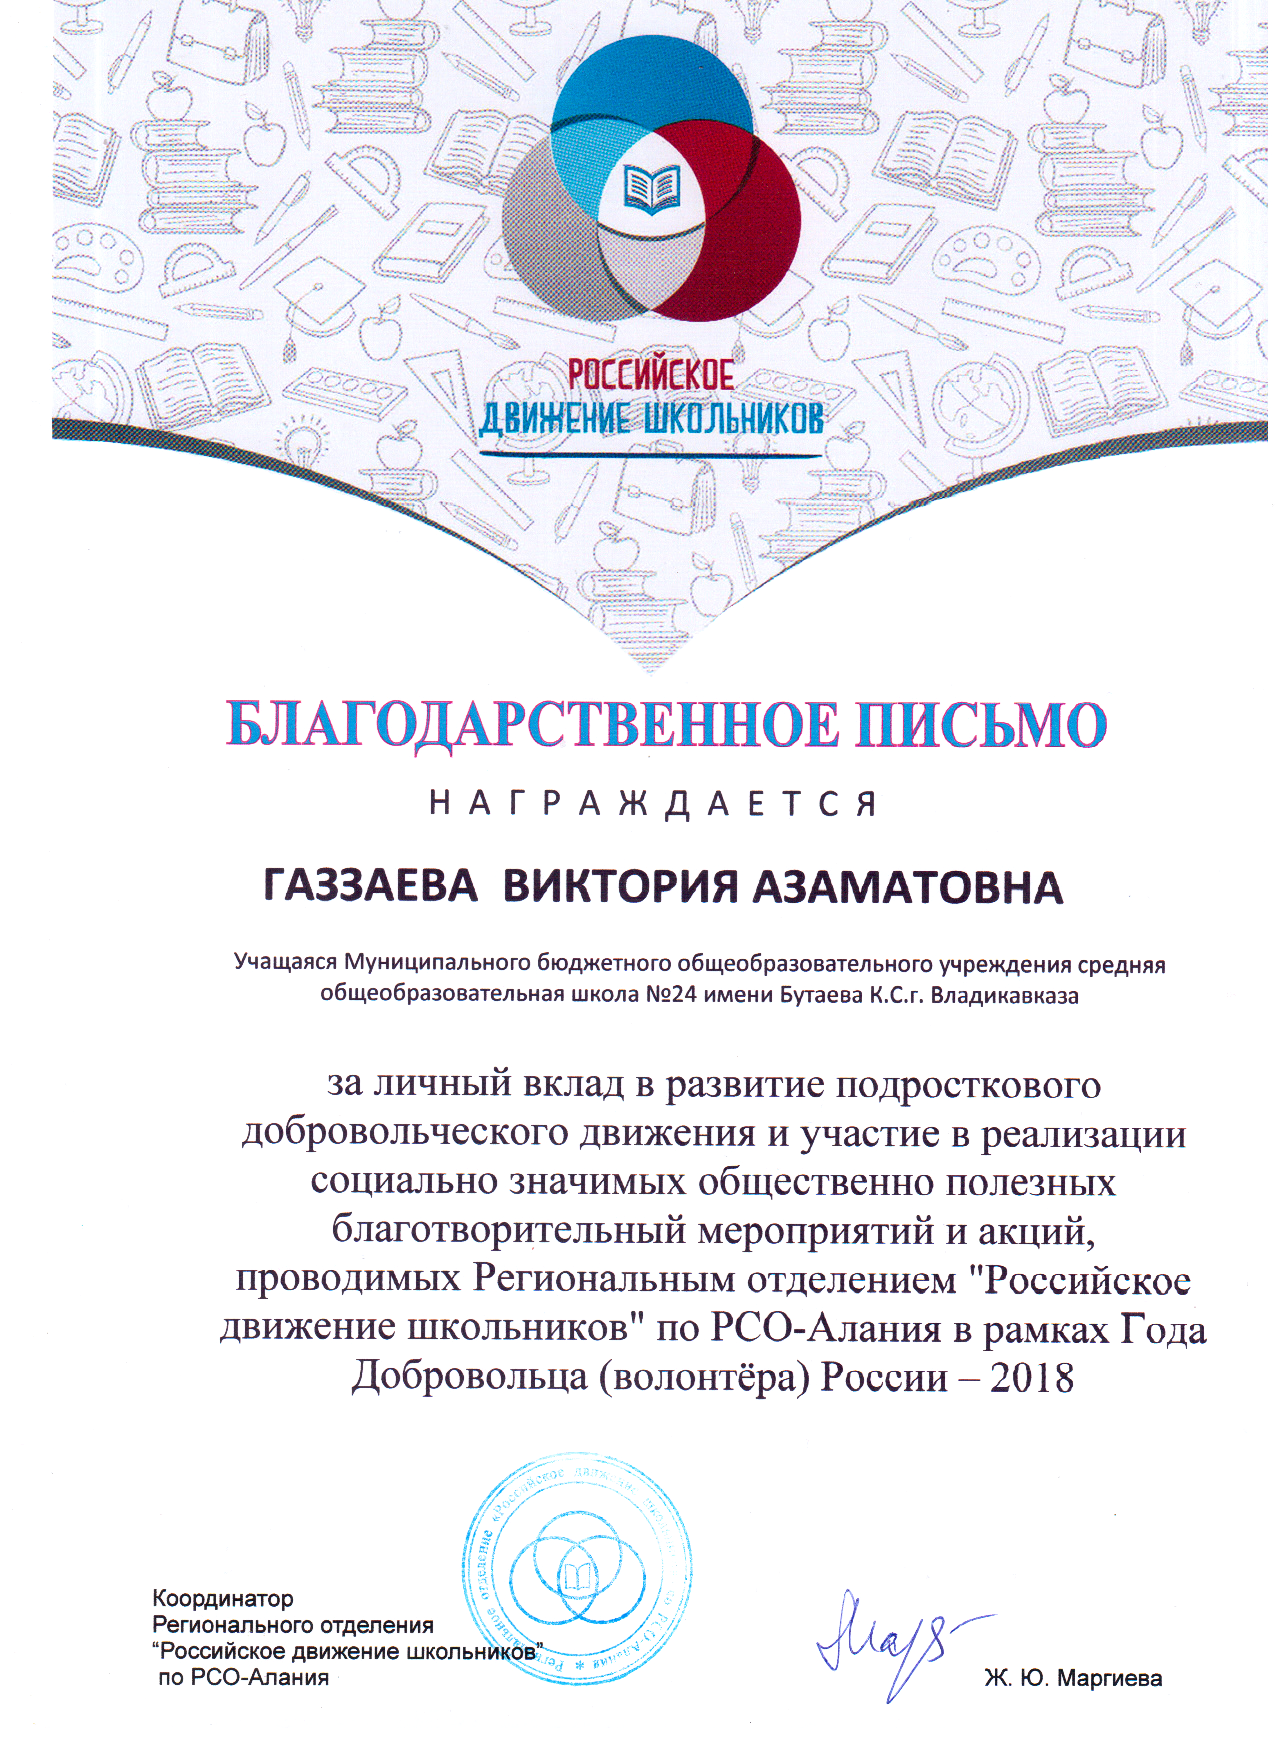 Год Добровольца (волонтера) России-2018